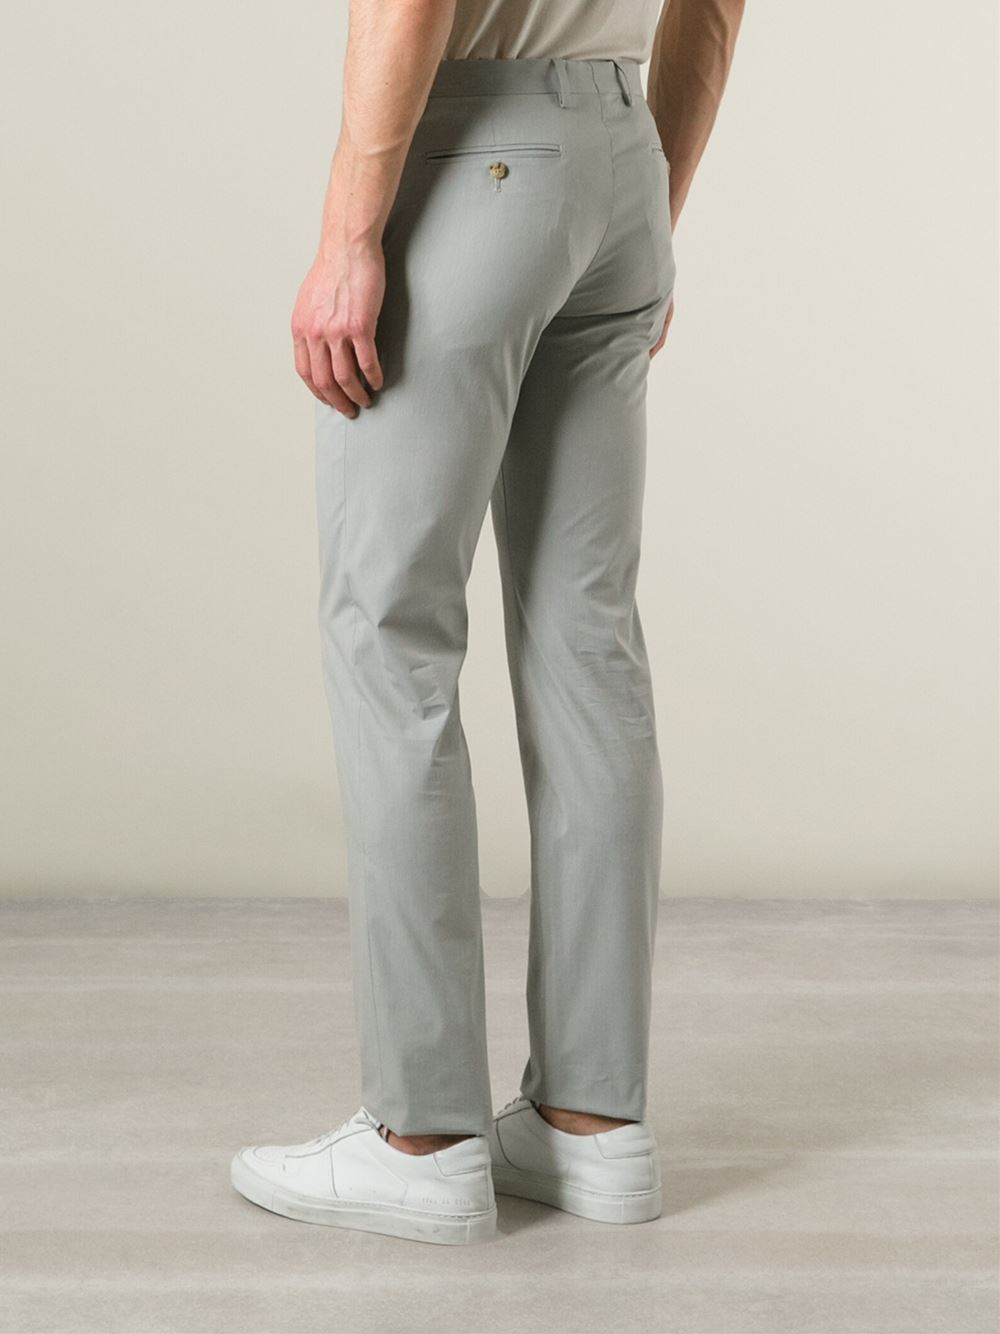 Giorgio Armani Classic Chino Trousers in Grey (Gray) for Men - Lyst